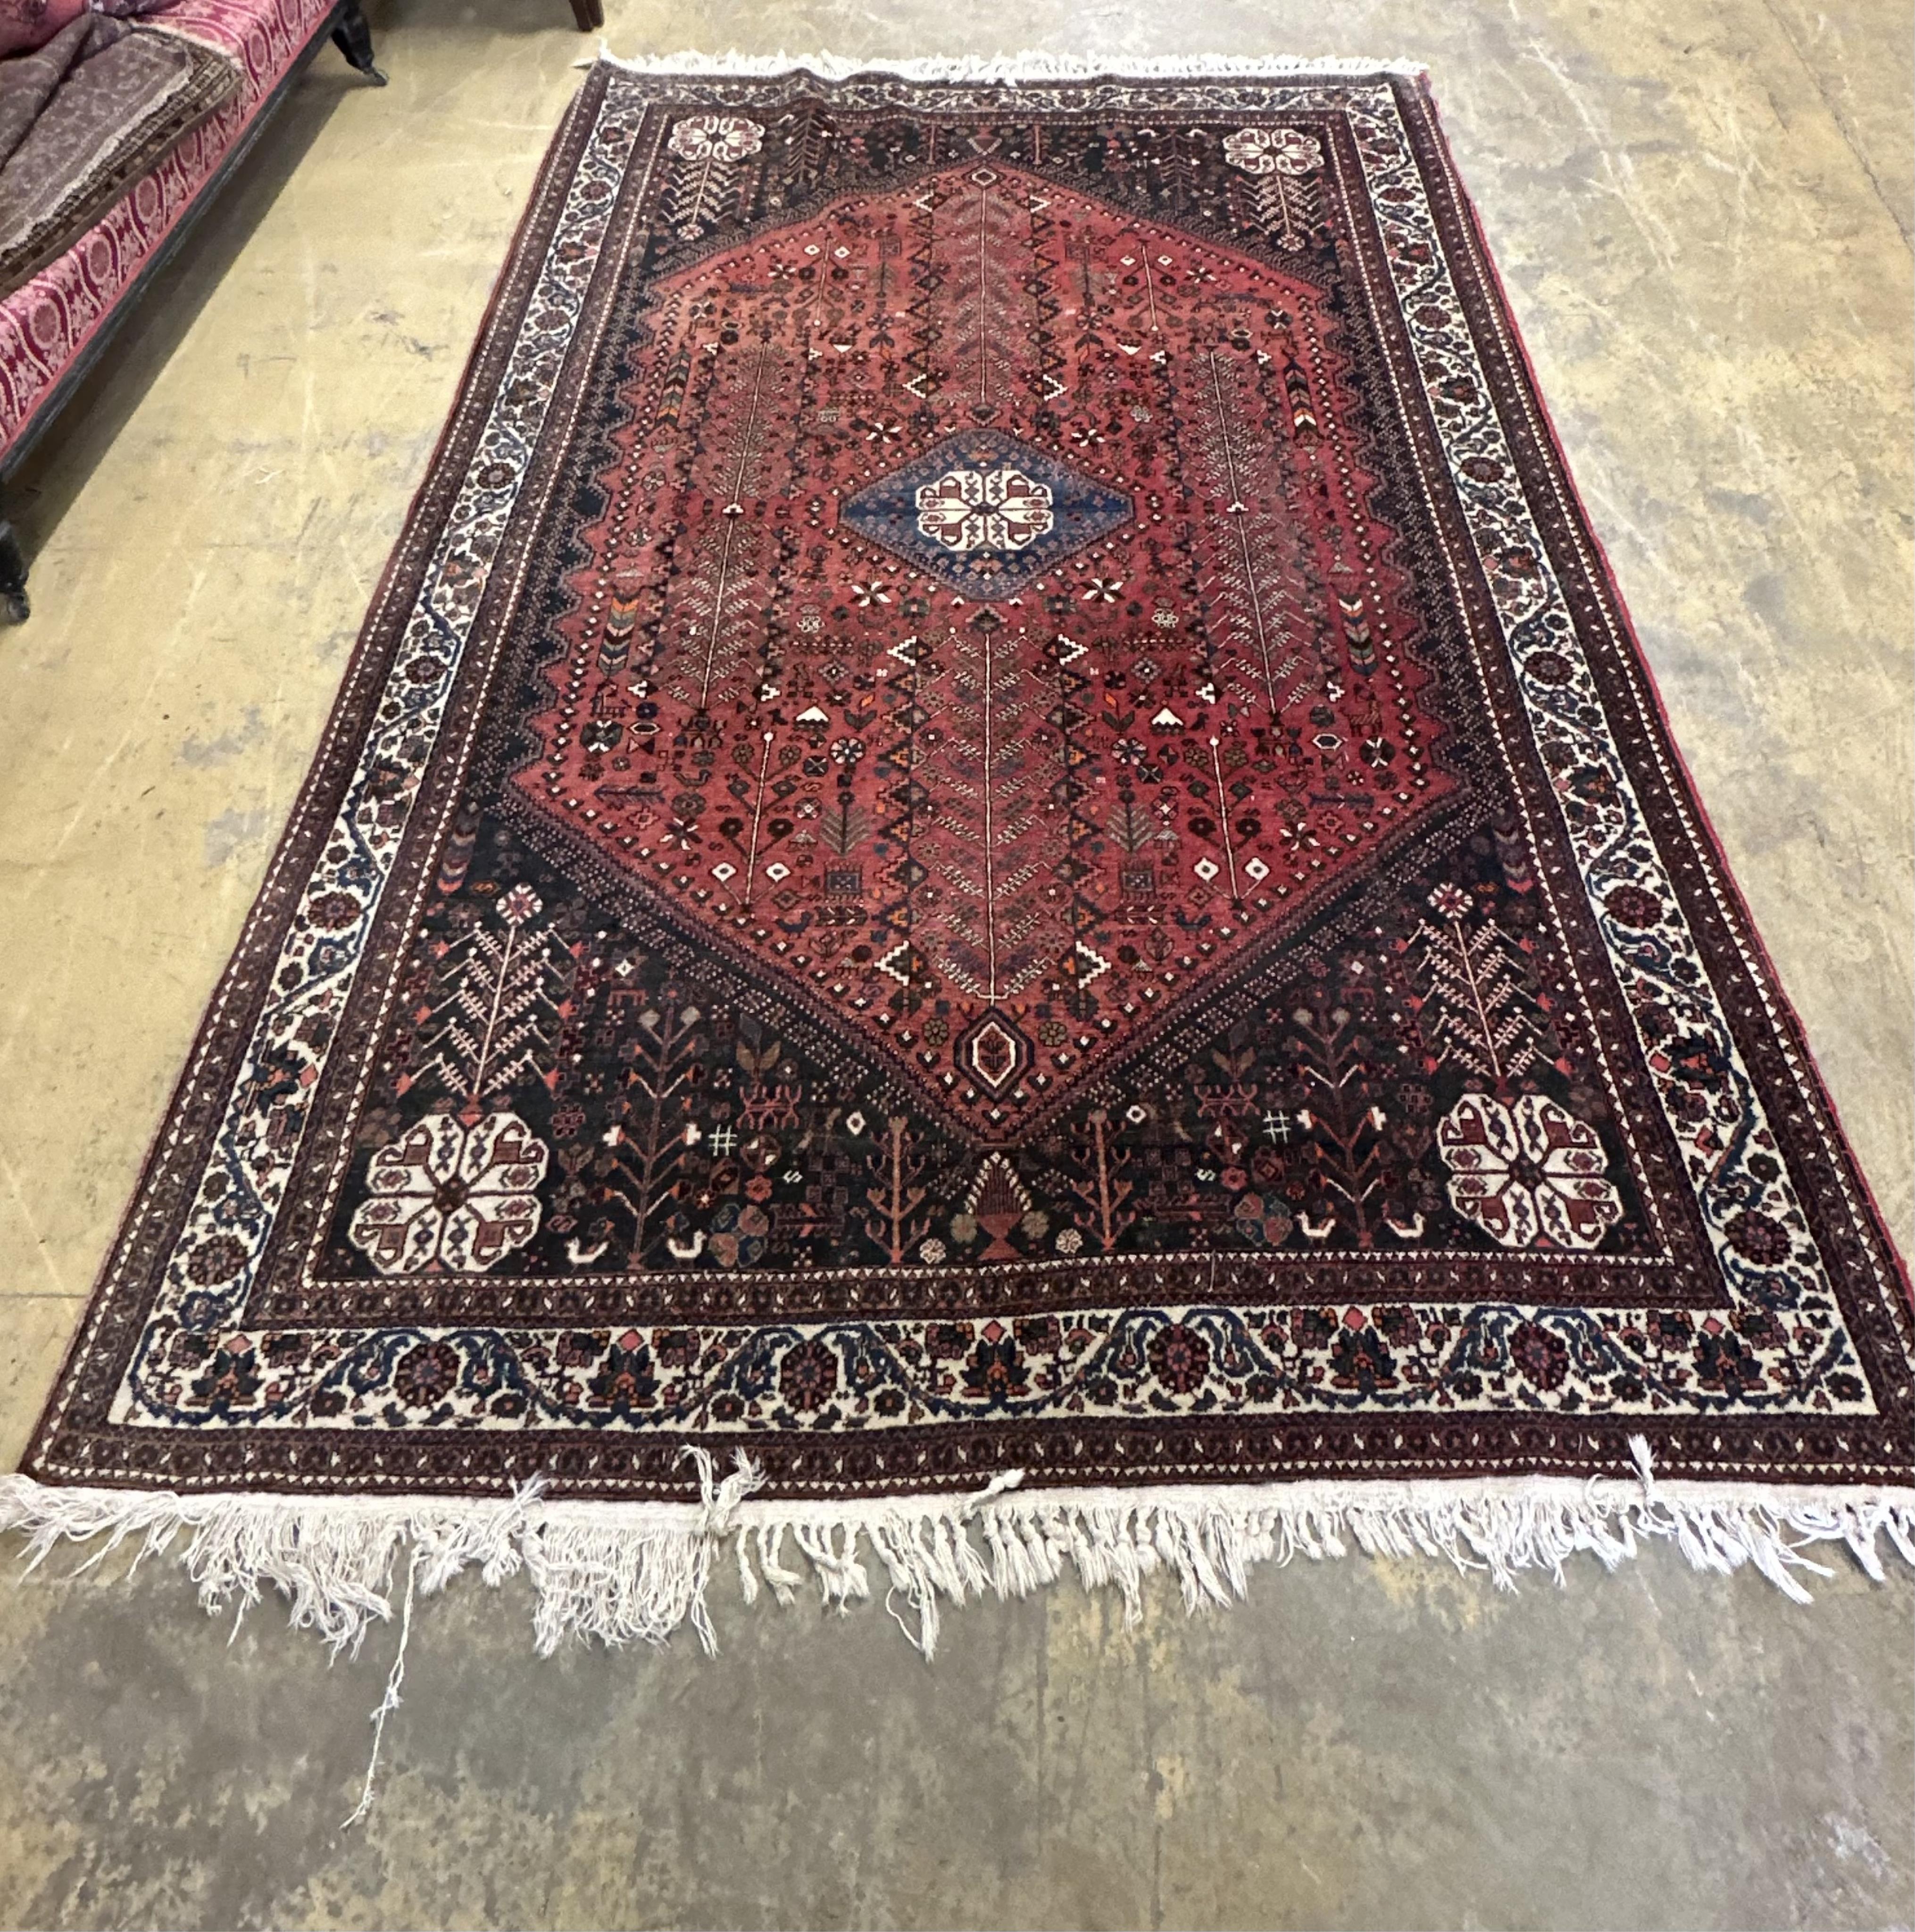 A Qashqai red ground carpet, 300 x 195cm. Condition - fair